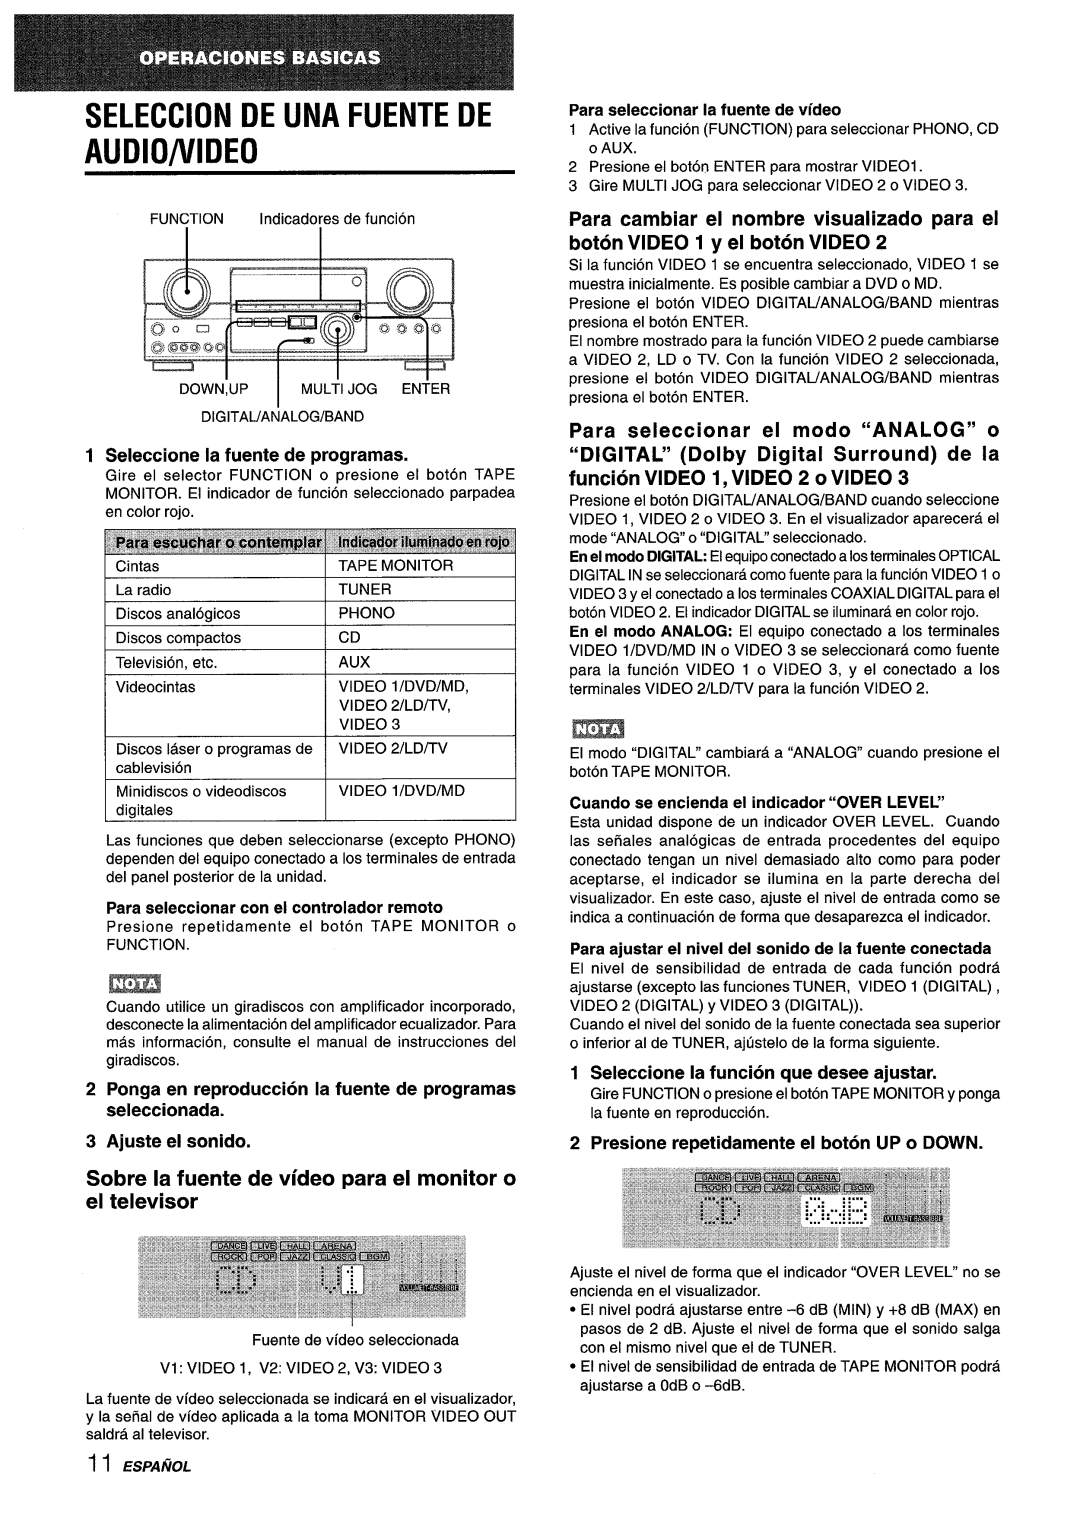 Sony AV-DV75 manual Audio/Video, Sobre la fuente de video para el monitor o el televisor, Seleccion De Una Fuente De 